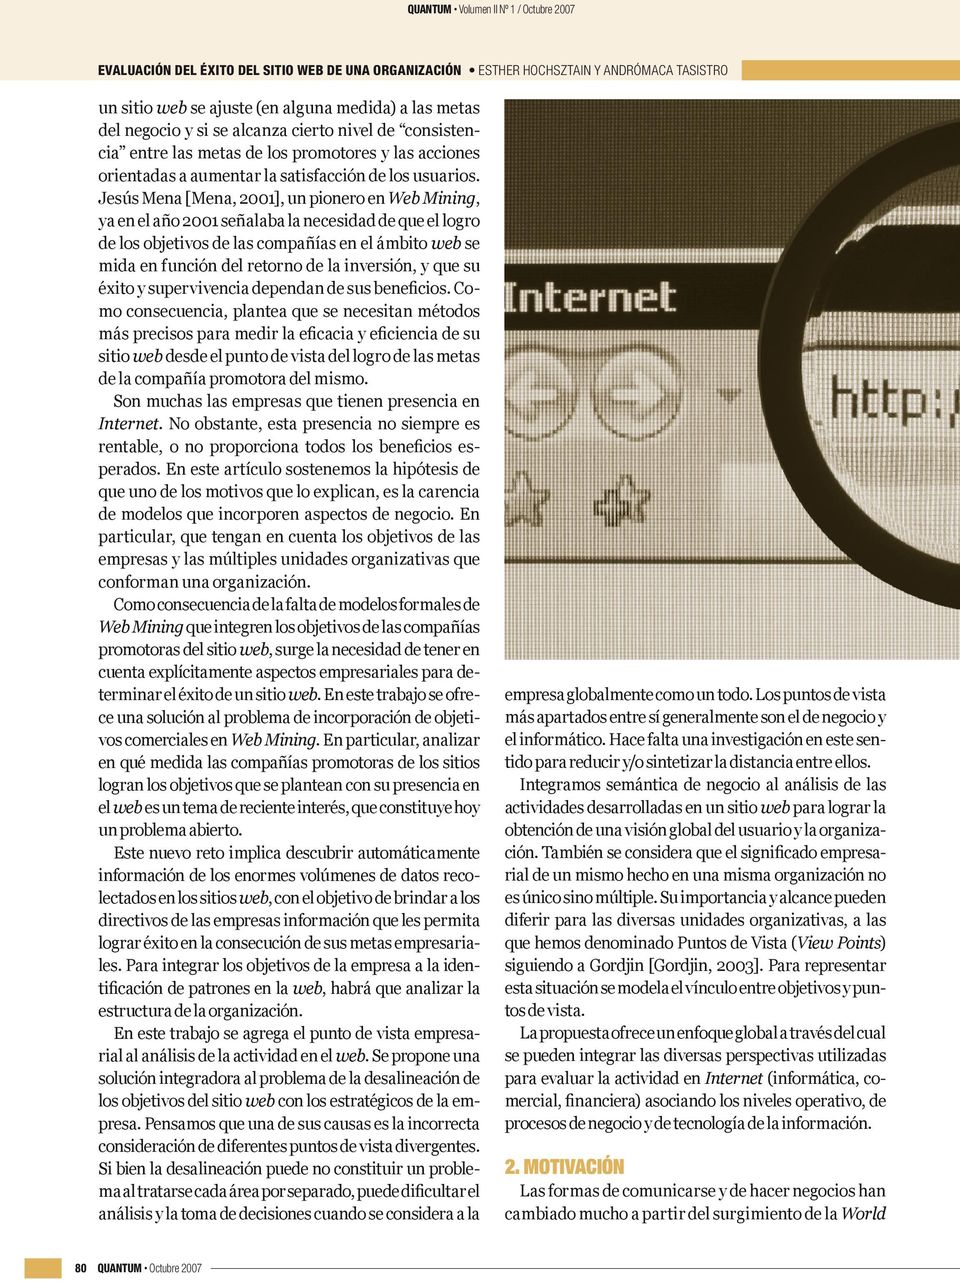 Jesús Mena [Mena, 2001], un pionero en Web Mining, ya en el año 2001 señalaba la necesidad de que el logro de los objetivos de las compañías en el ámbito web se mida en función del retorno de la